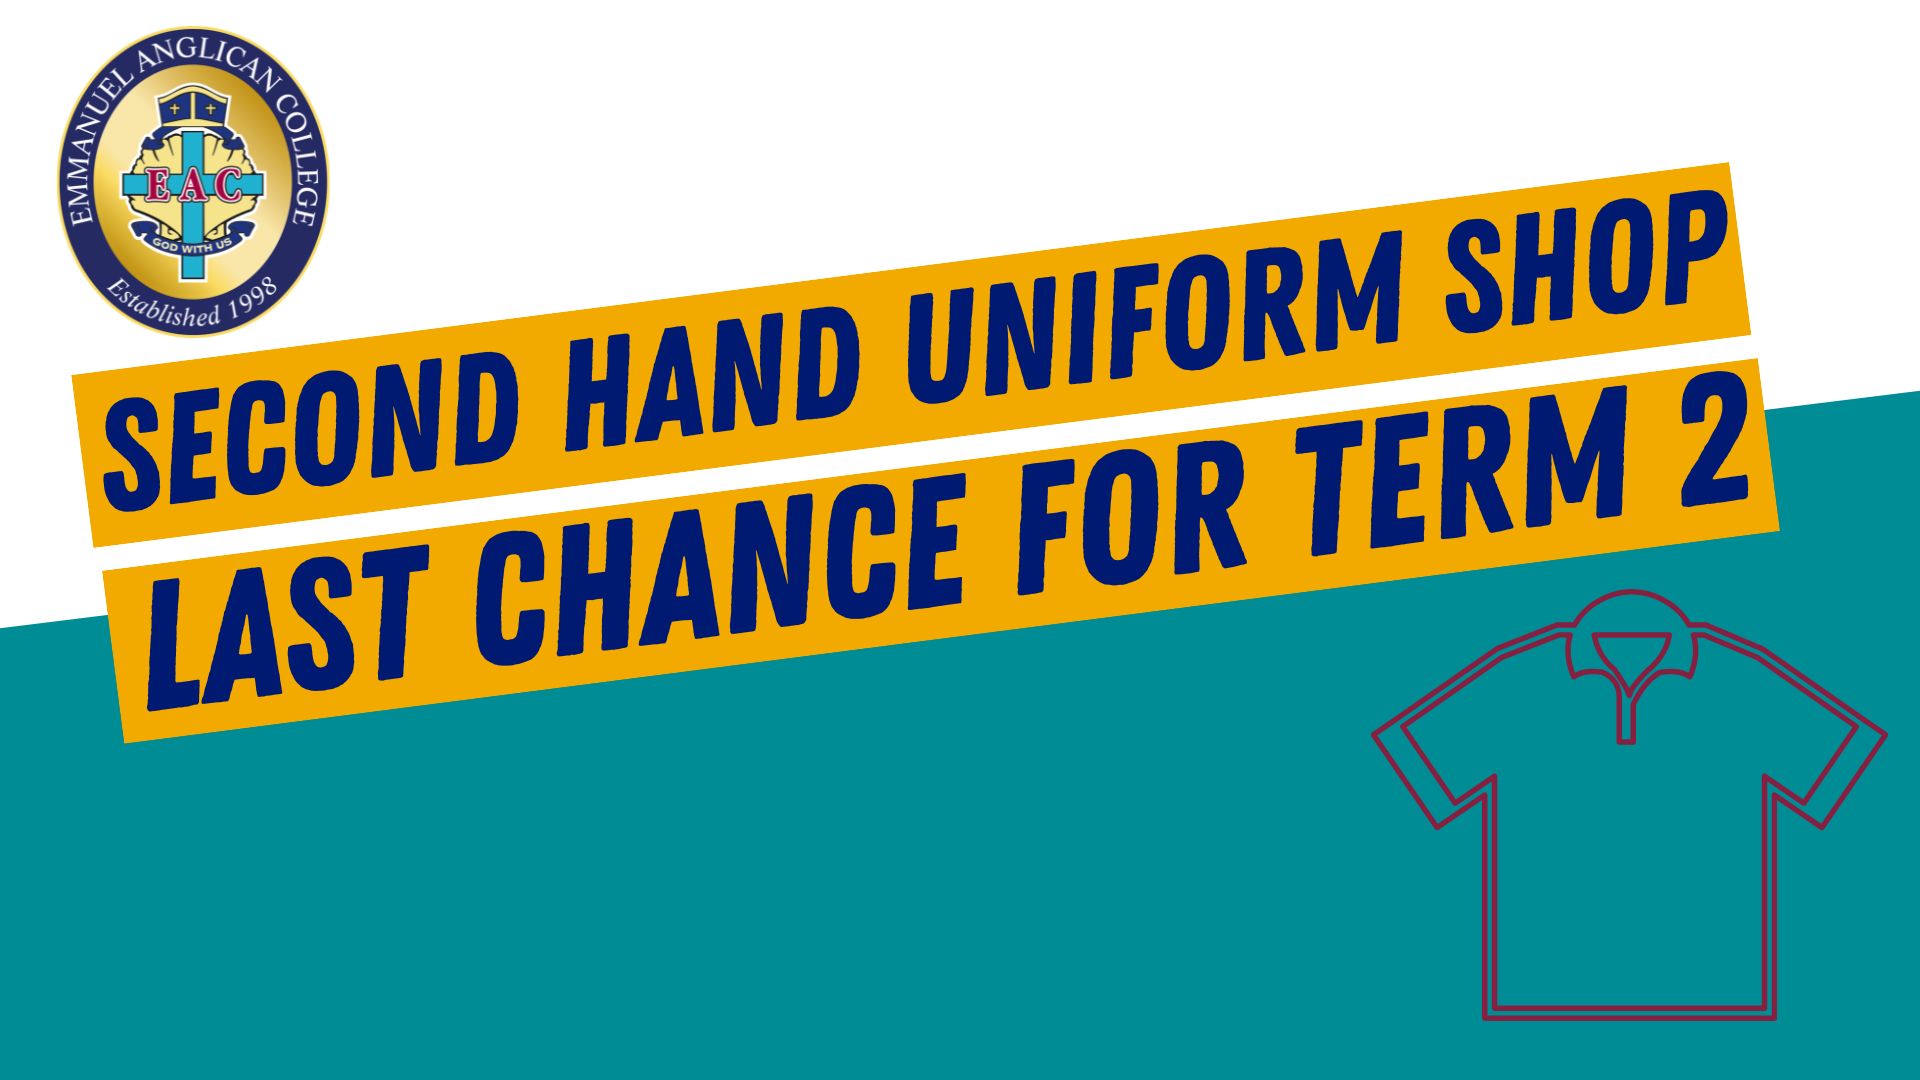 Second Hand Uniform Shop Last Chance Term 2